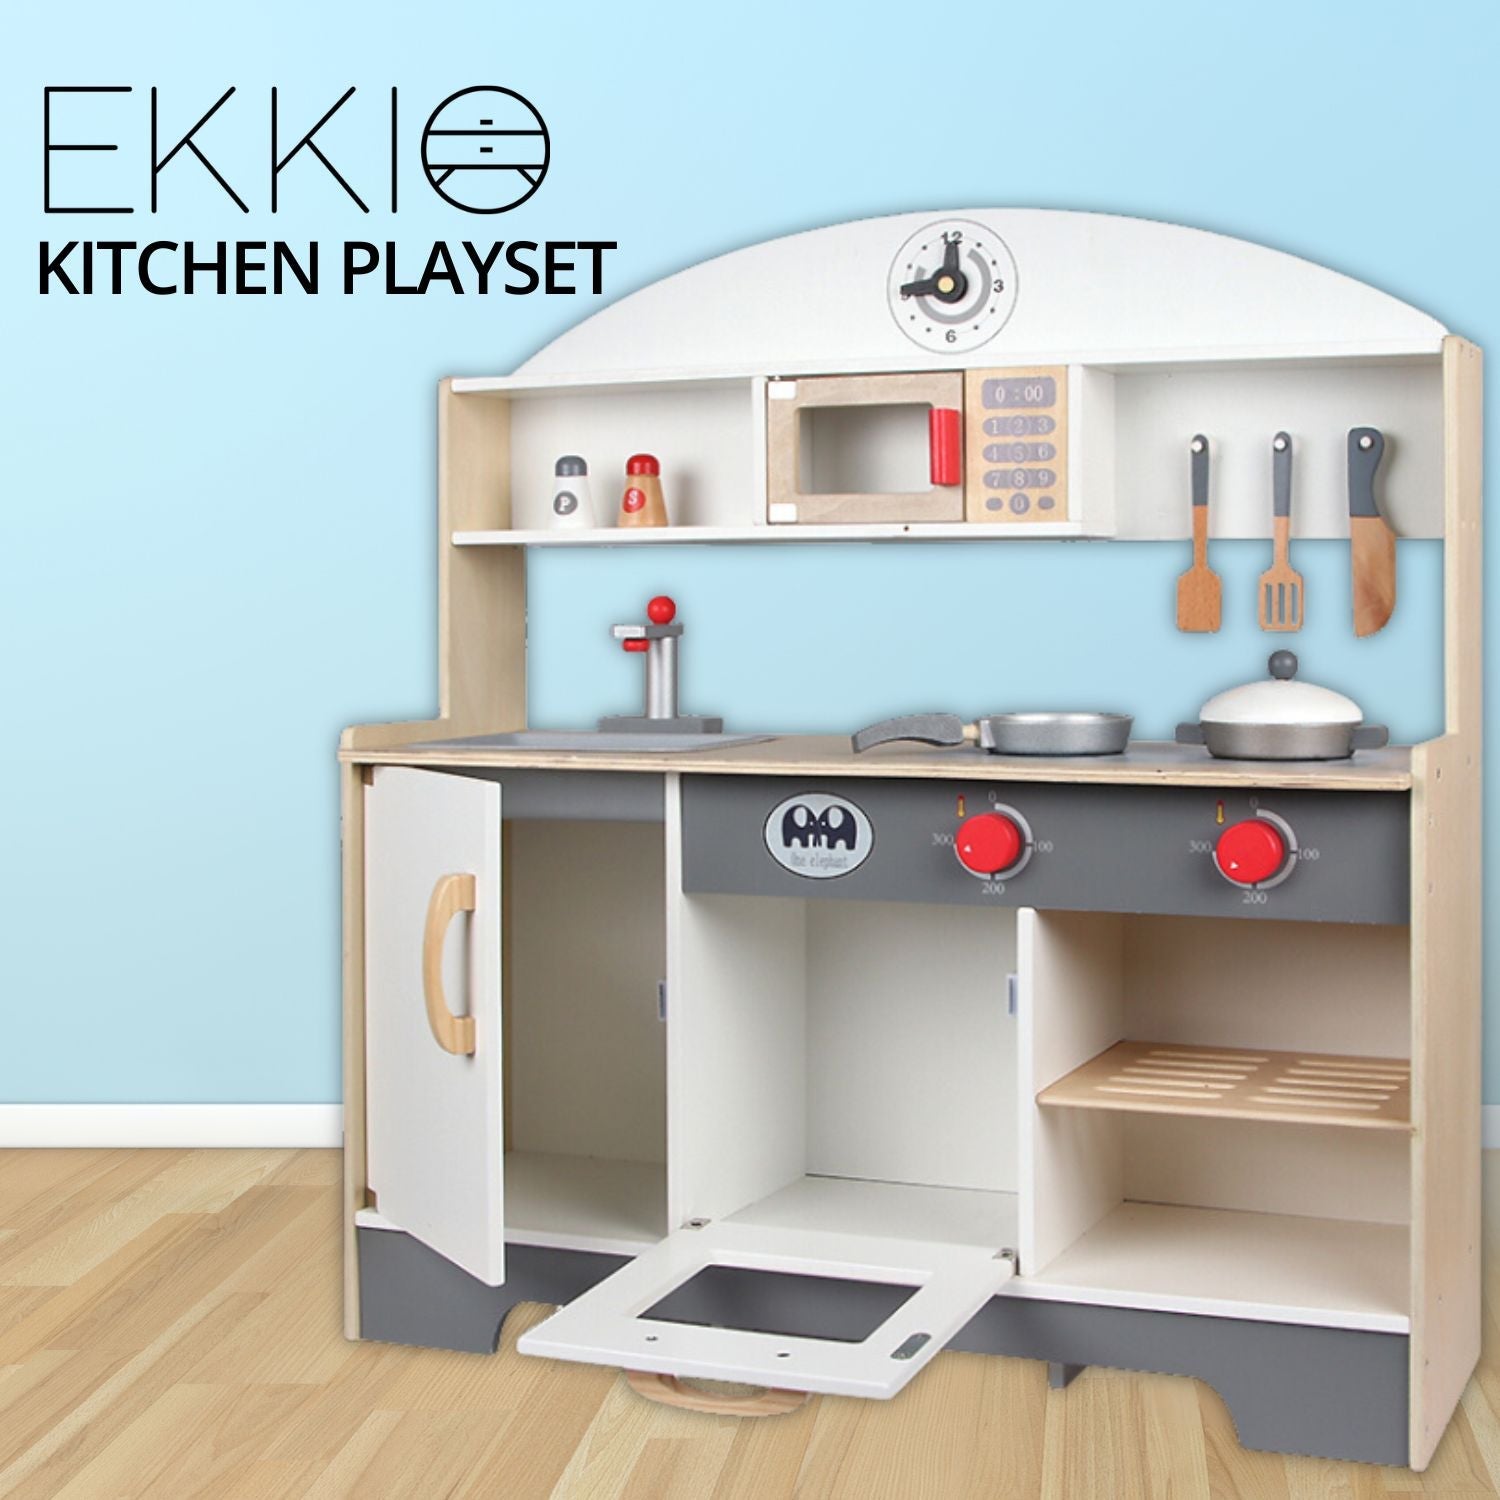 EKKIO Wooden Kitchen Playset for Kids (Minimalist) EK-KP-100-MS - Little Kids Business